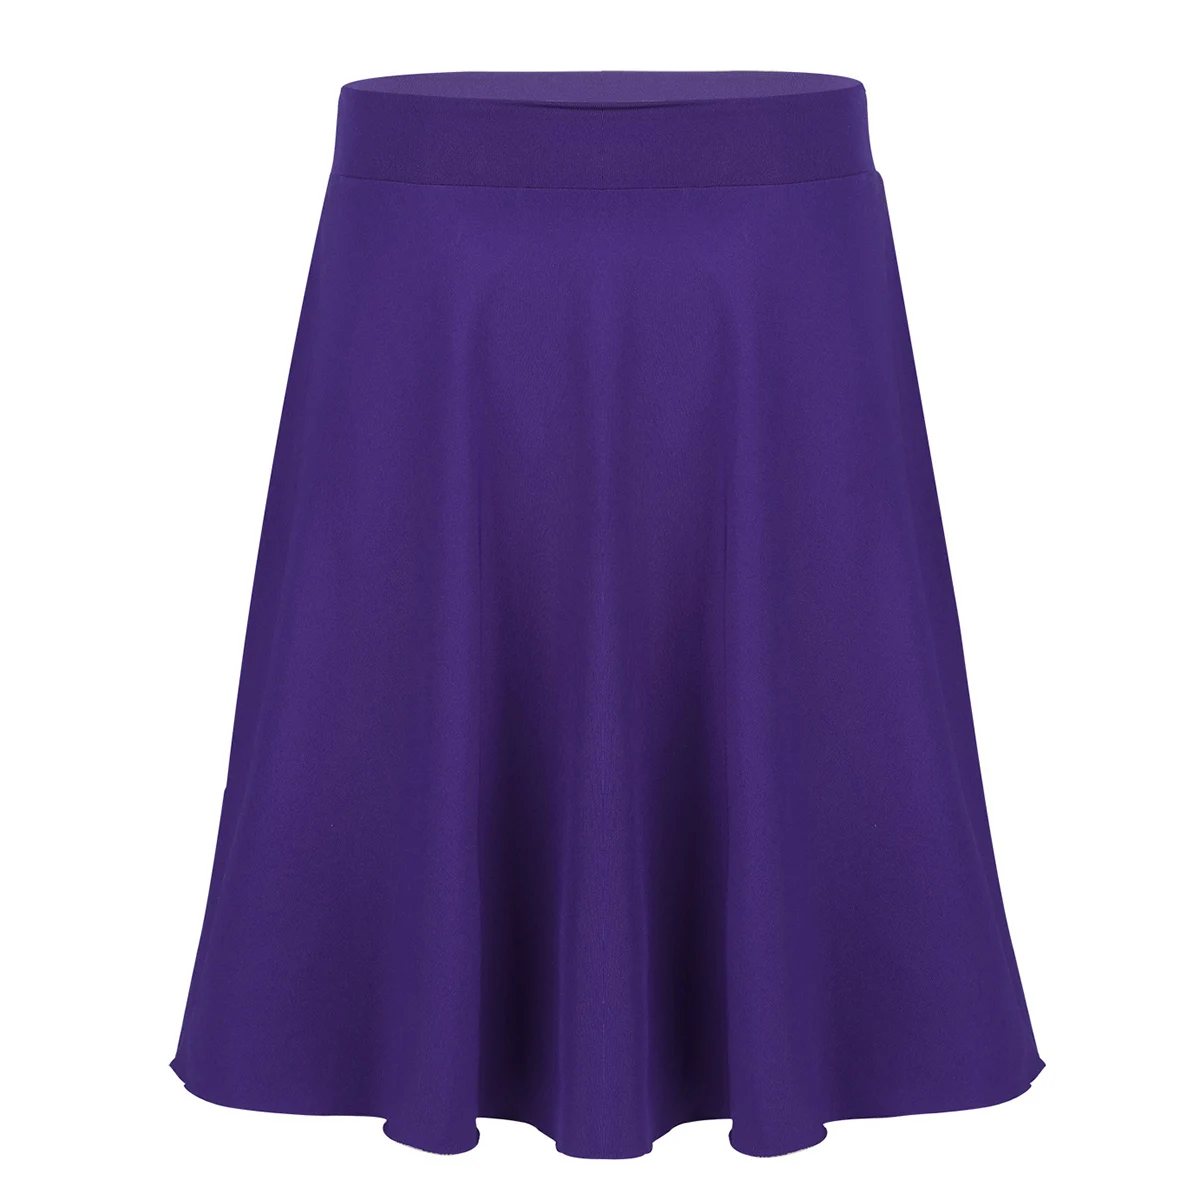 Iiniim/летние юбки для подростков; Однотонная легкая эластичная Юбка До Колена трапециевидной формы для девочек; Повседневная праздничная одежда - Цвет: Purple